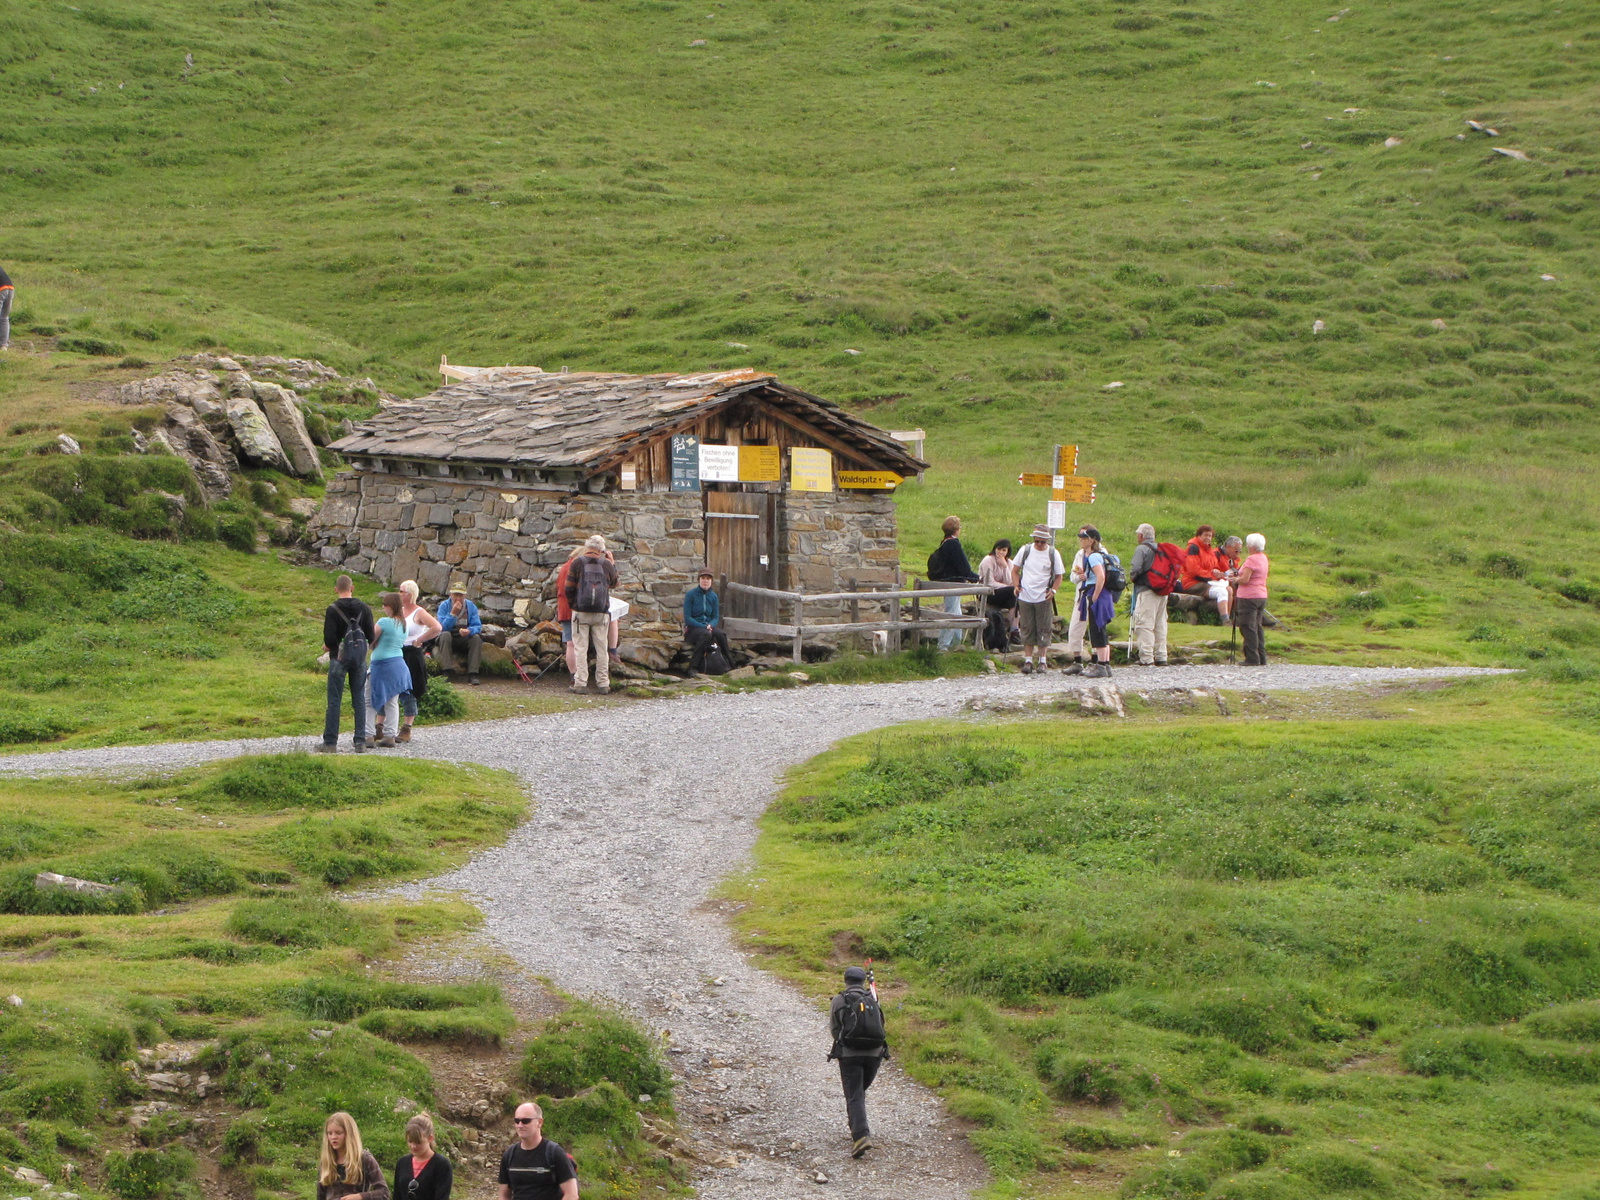 Jungfrau Region, a First - Bachalpsee túrista úton, SzG3